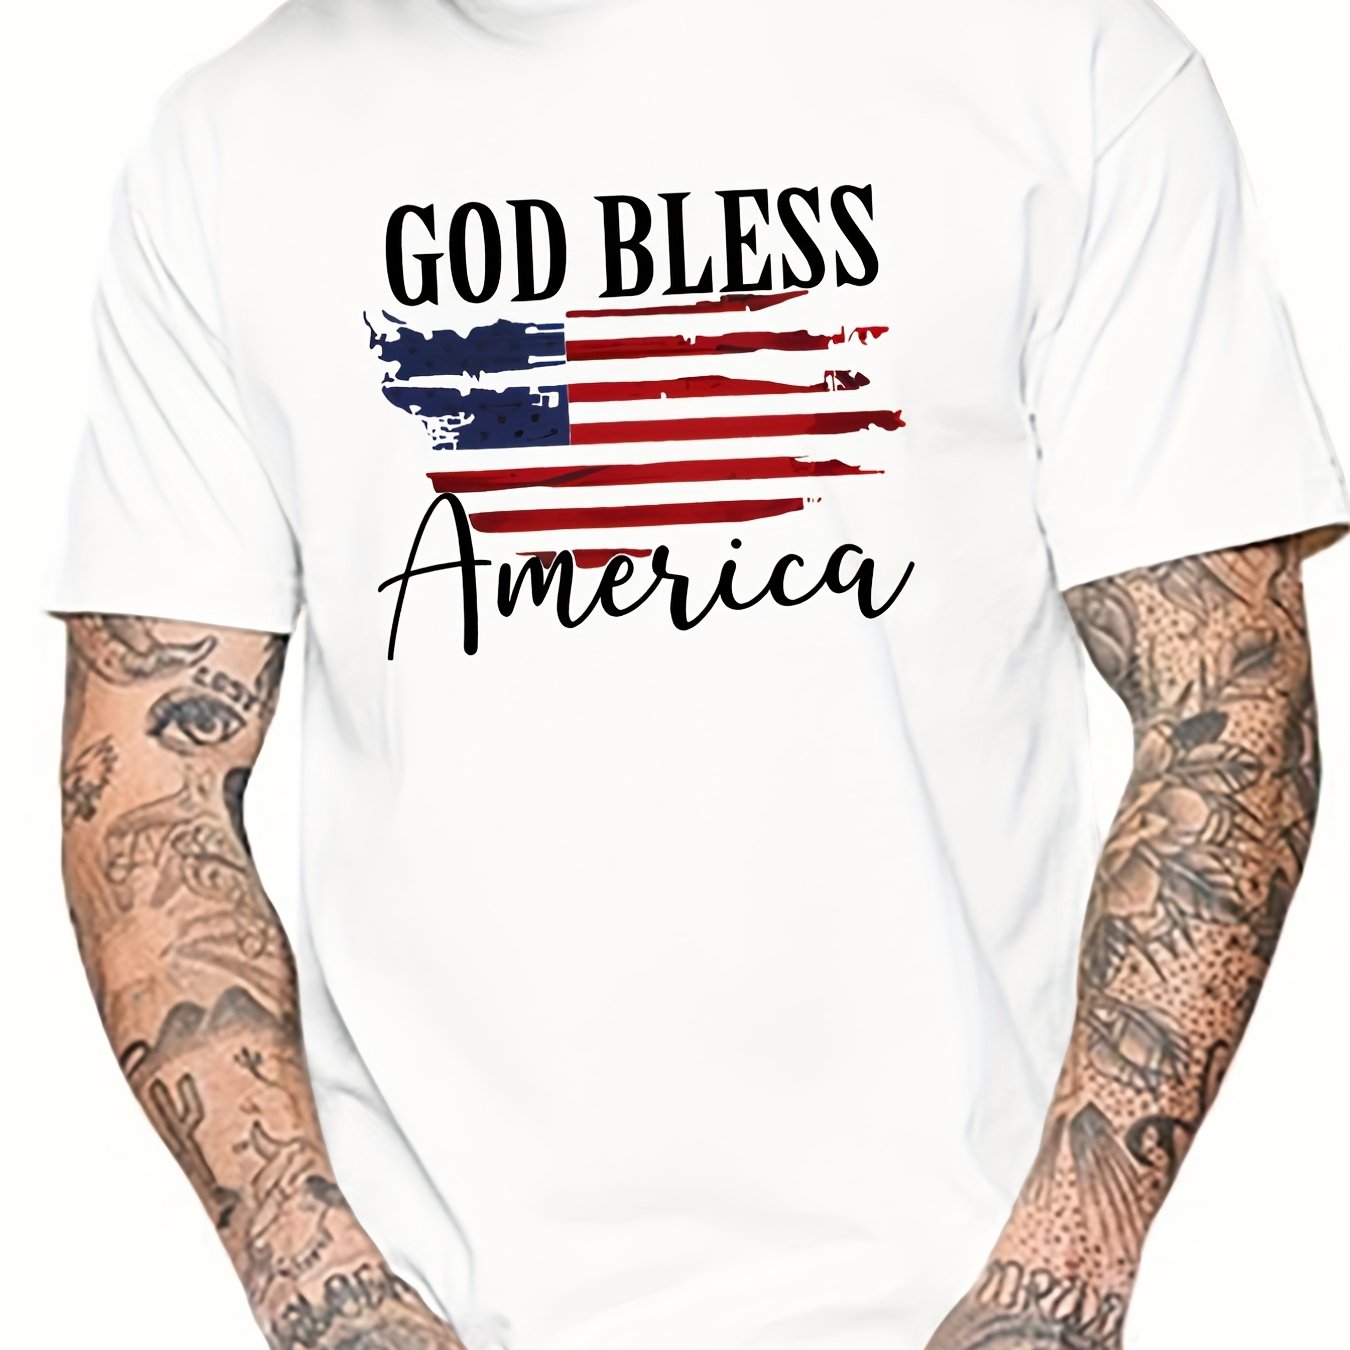 'God Bless America' Patriotic American Flag Men's Christian T-shirt claimedbygoddesigns